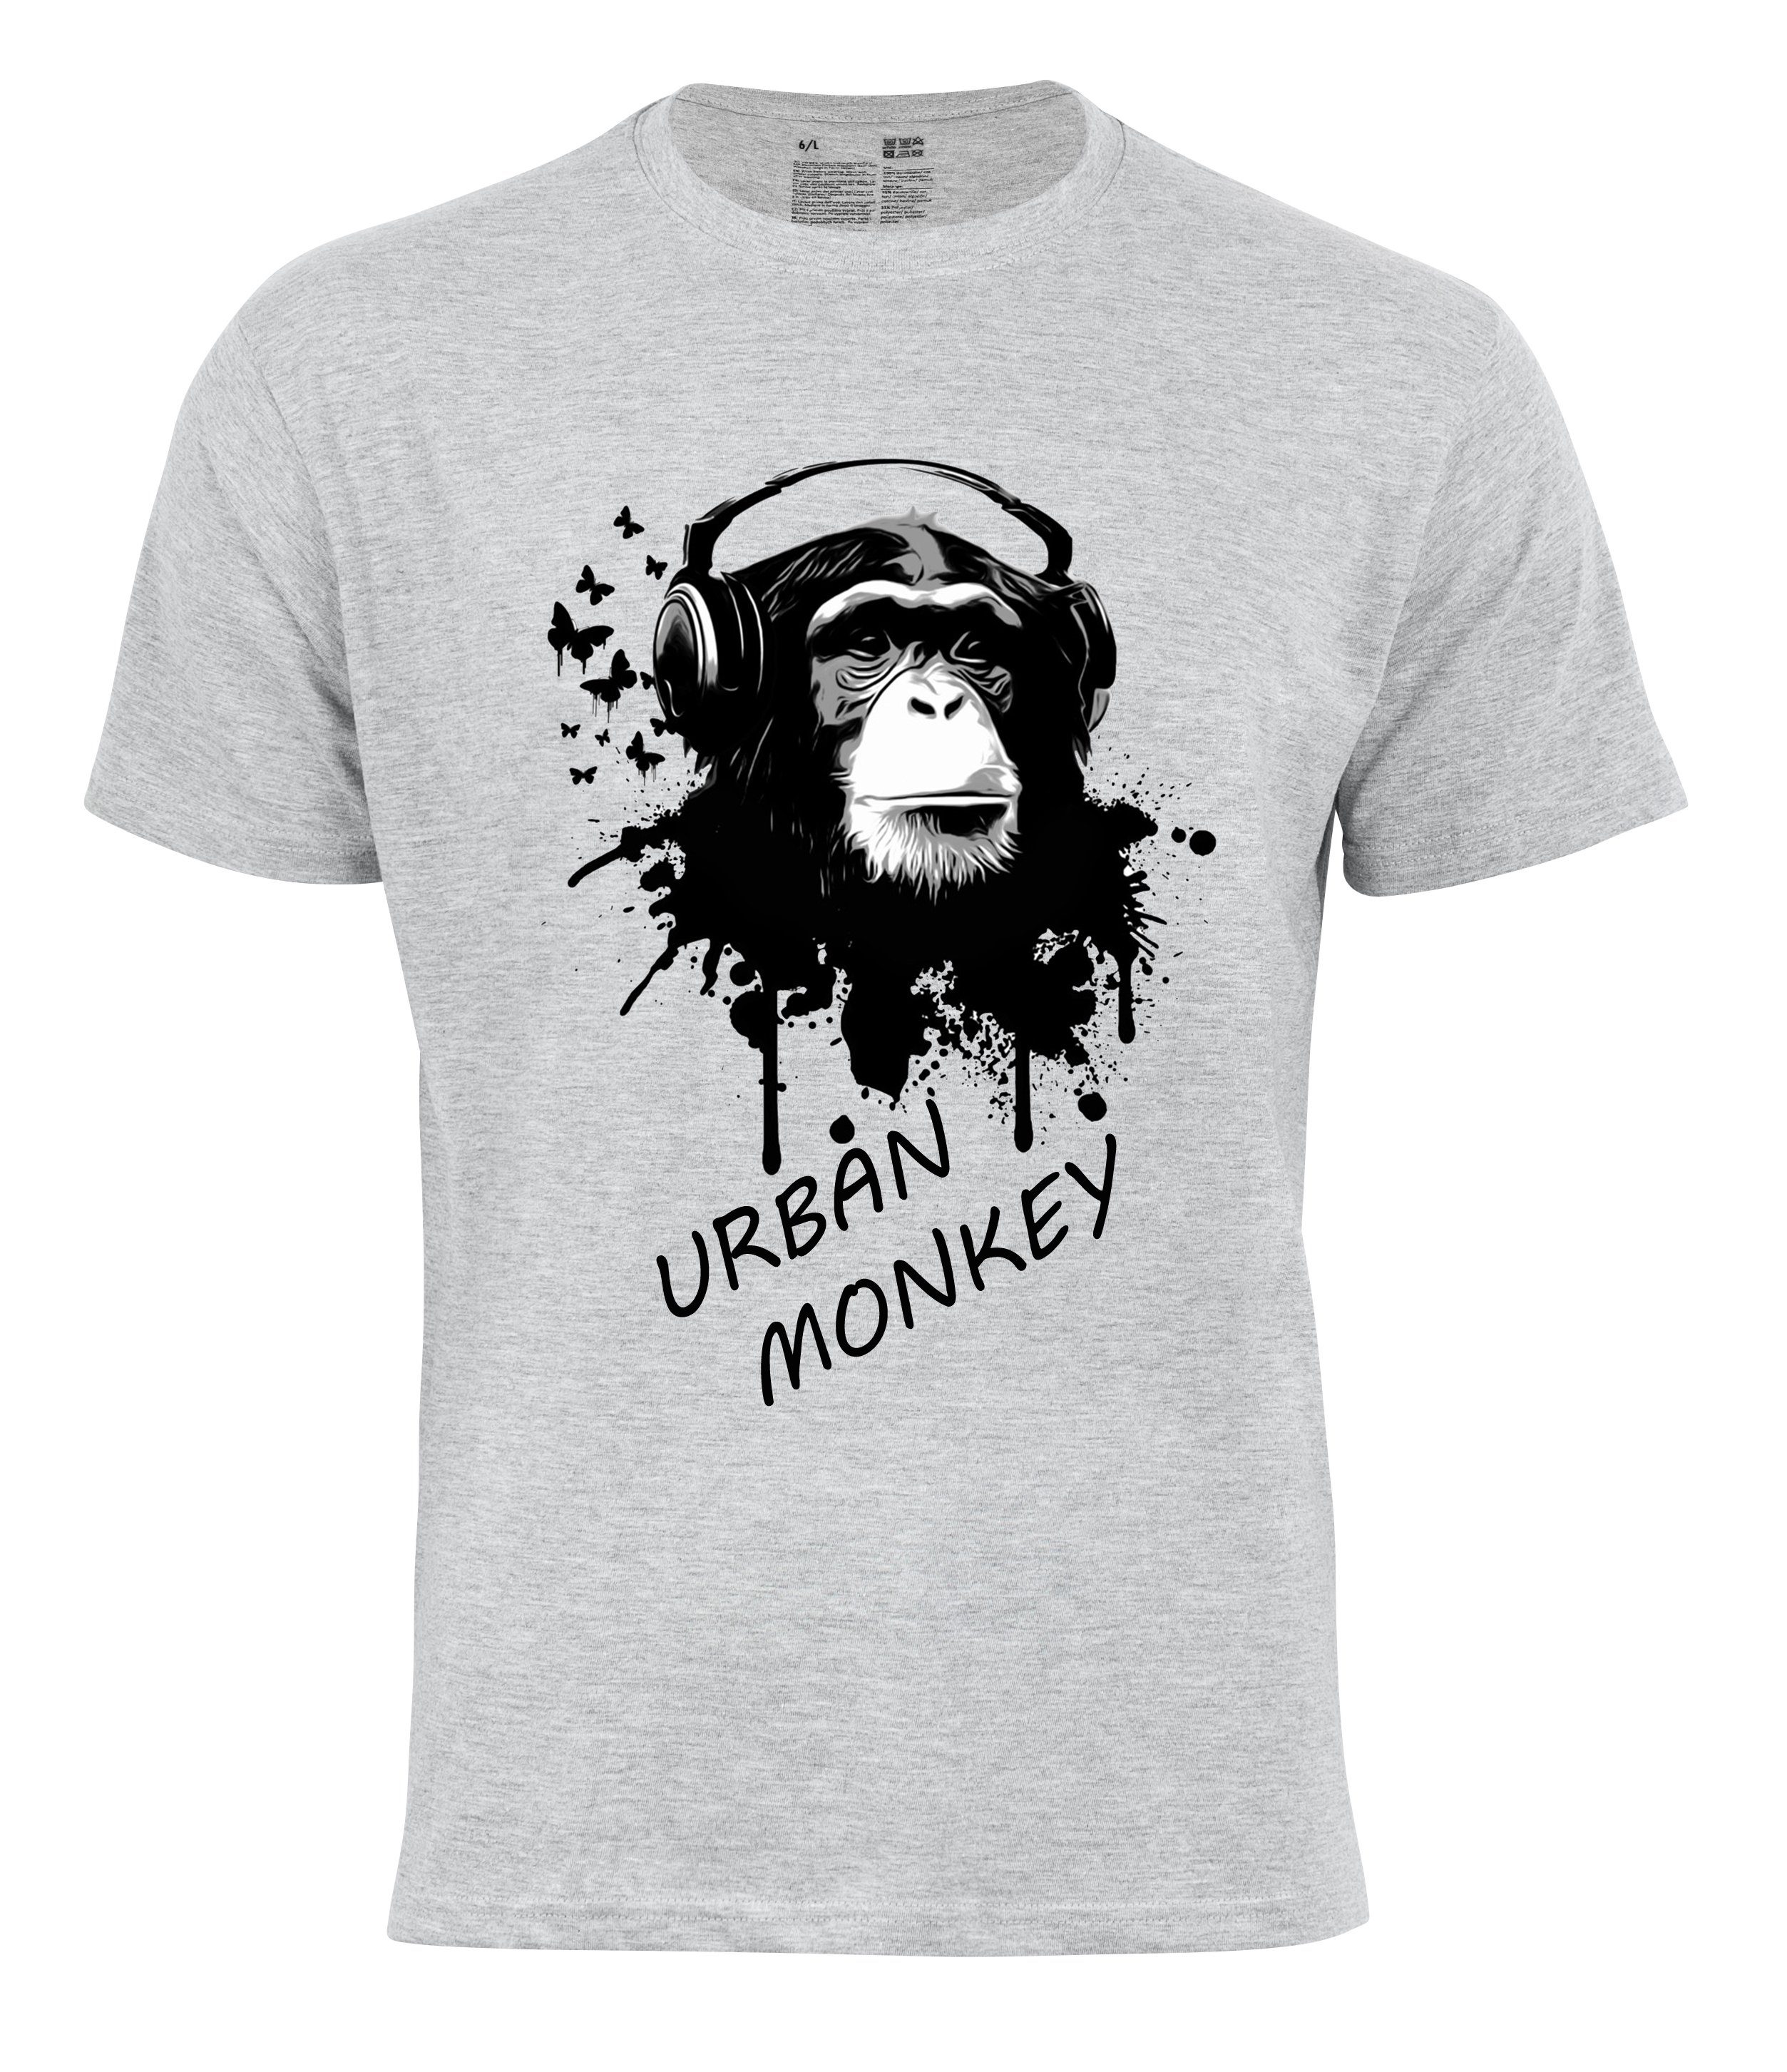 Cotton Prime® T-Shirt "URBAN MONKEY" grau